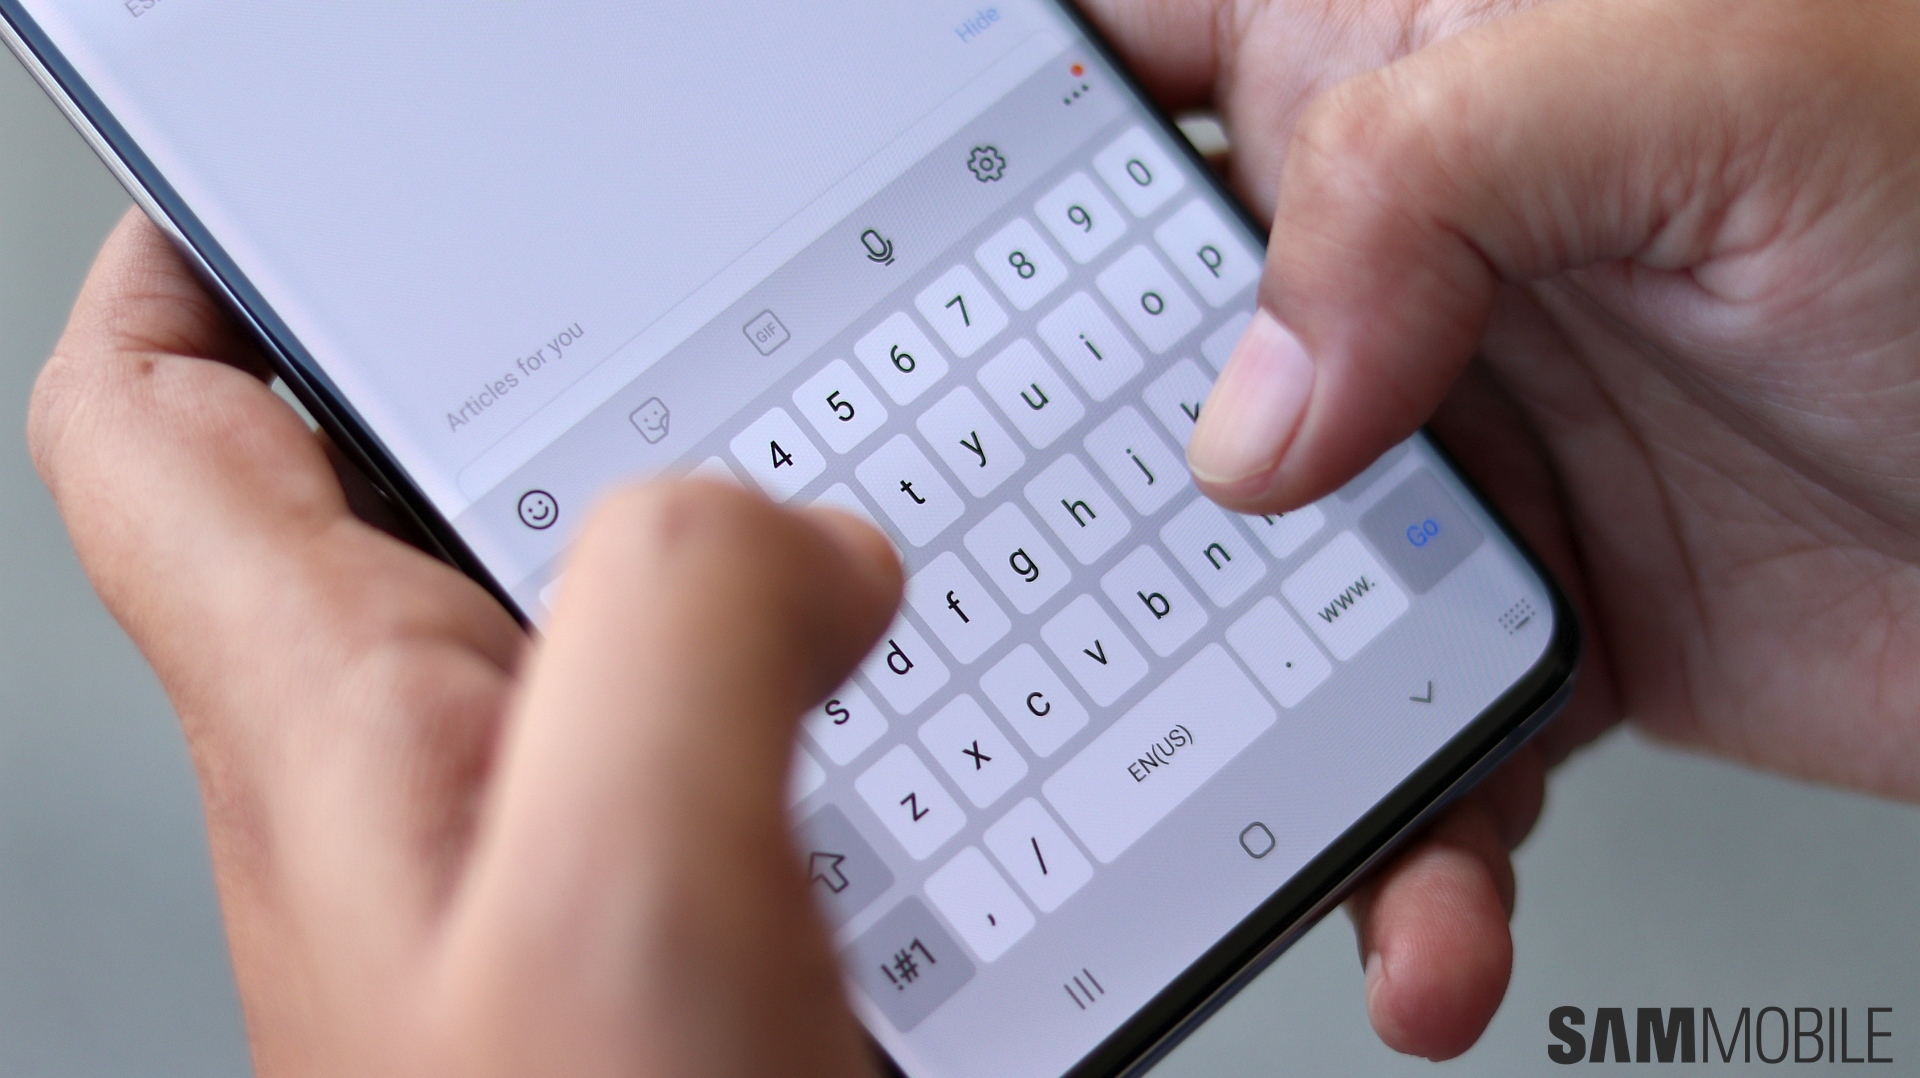 Bạn có biết bàn phím Samsung được tích hợp với tính năng Clipboard mạnh mẽ giúp bạn dễ dàng sao chép và chia sẻ dữ liệu một cách nhanh chóng? Hãy khám phá tính năng này ngay để trải nghiệm sự tiện lợi của nó trên thiết bị của bạn.